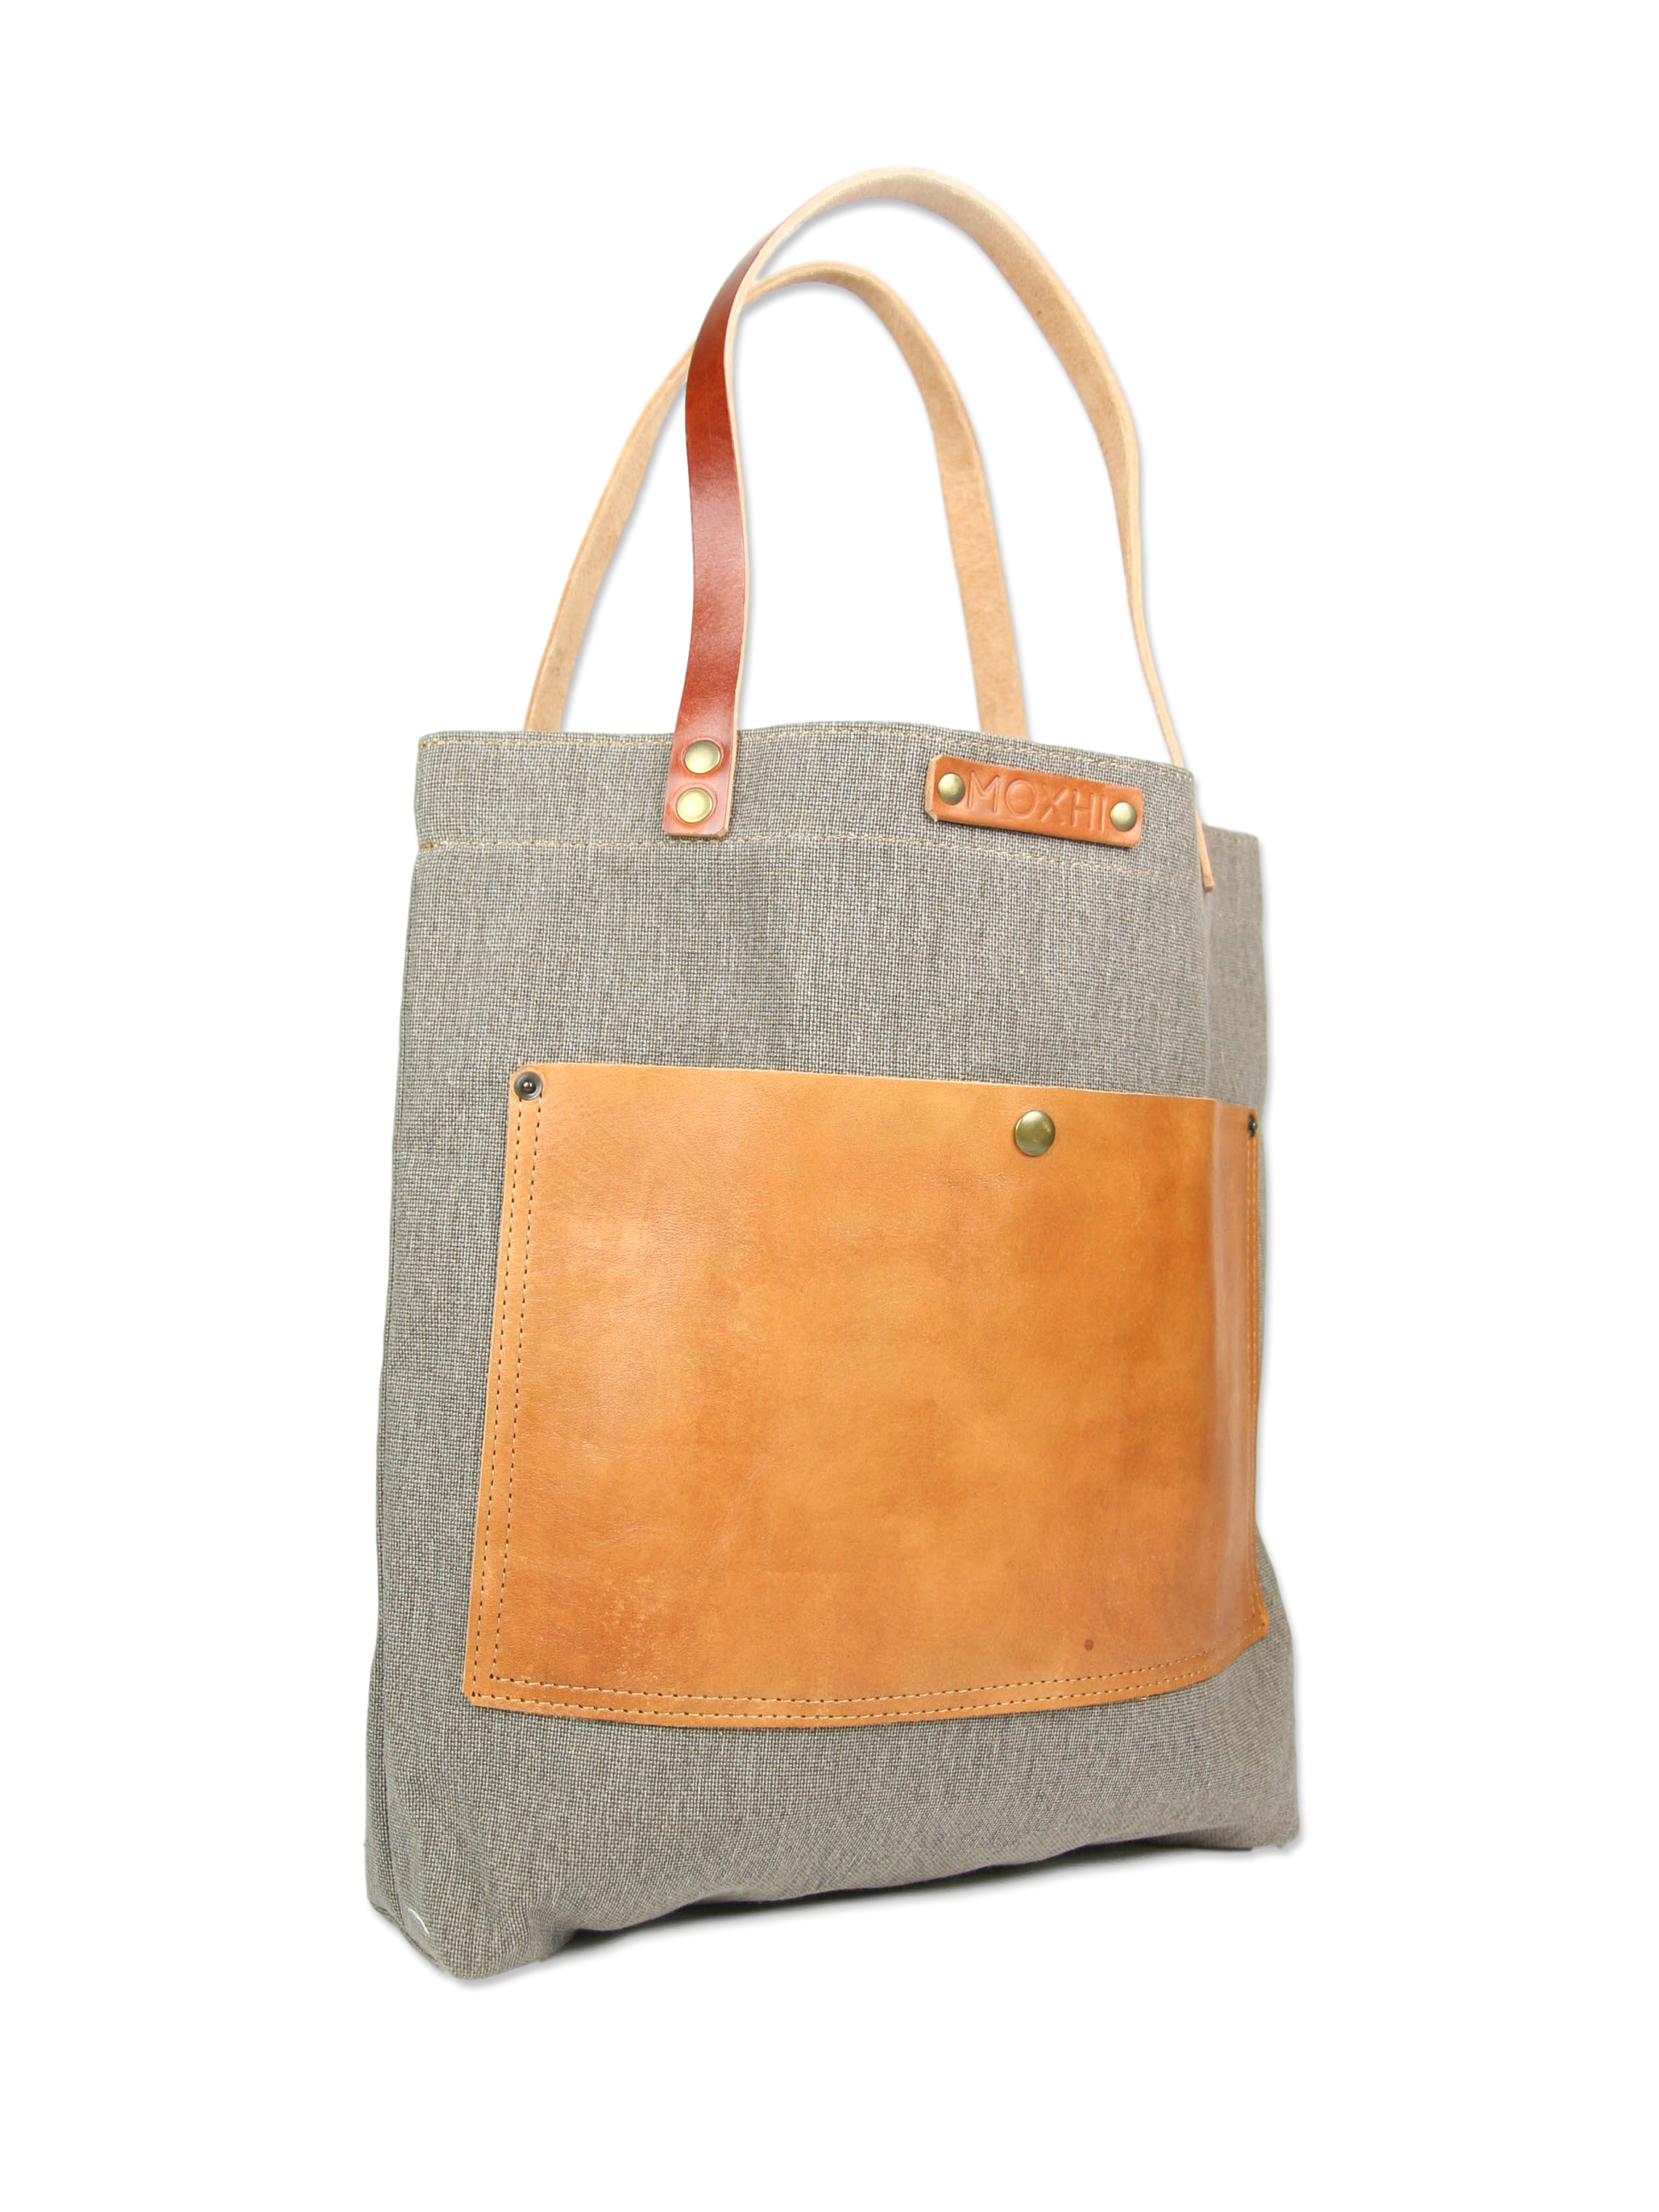 Handmade shopper bag classic